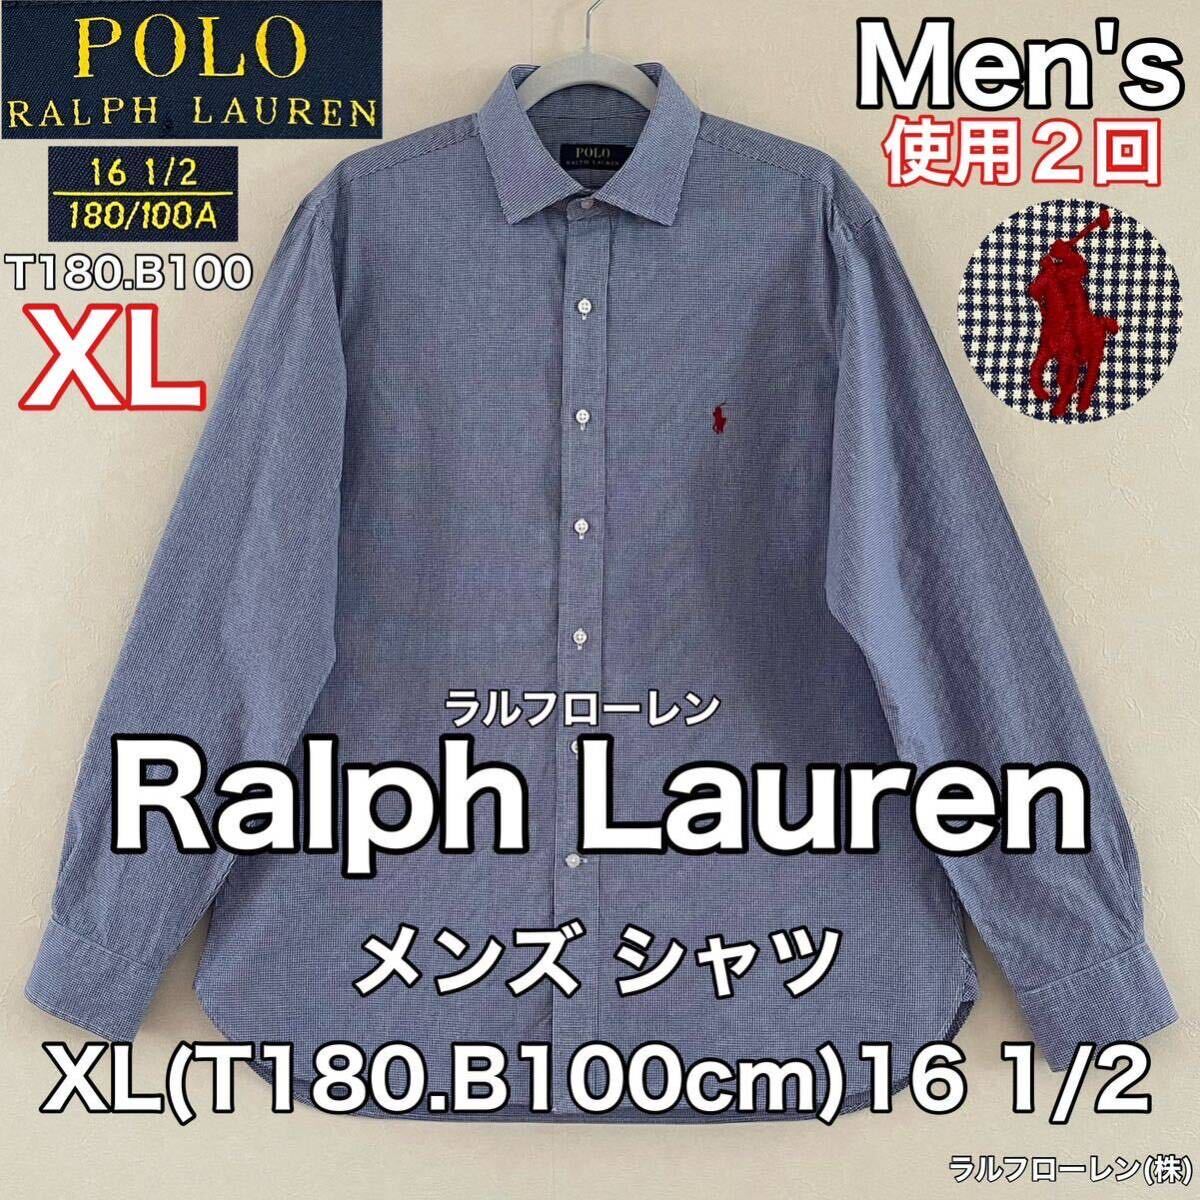 超美品 Ralph Lauren(ラルフローレン)メンズ シャツ XL(T180.B100cm)16 1/2ブルー ホワイト チェック 長袖 使用2回 ラルフローレン(株)